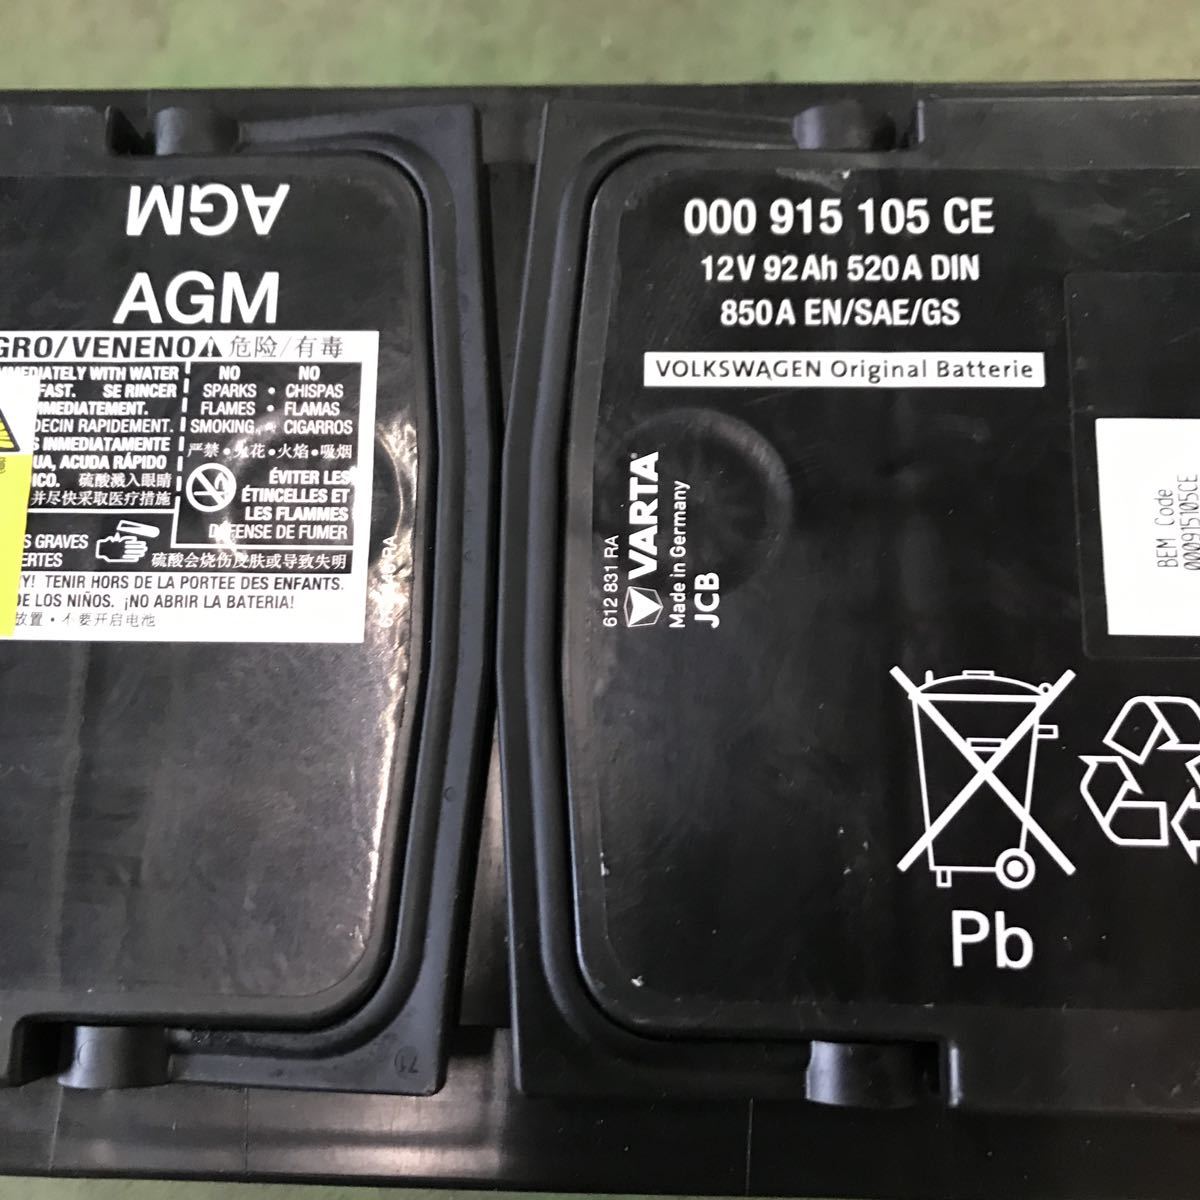 [F-73] VOLKSWAGEN Volkswagen original battery VARTA bar taAGM battery 000 915 105 CE free shipping 